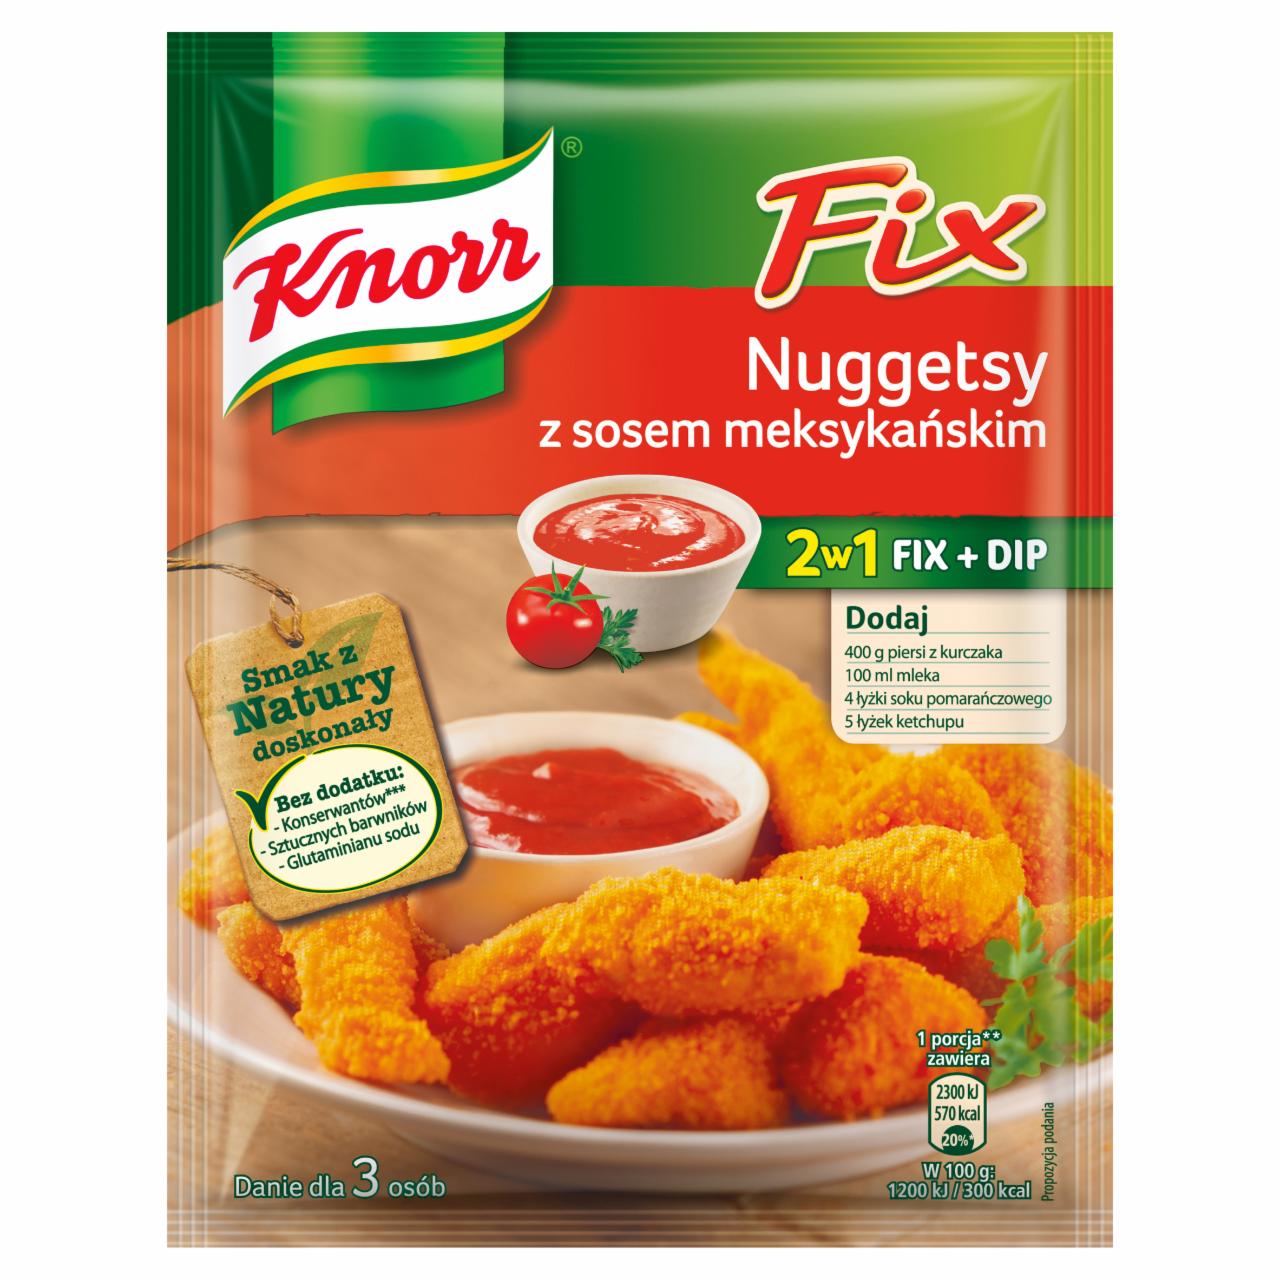 Zdjęcia - Knorr Fix nuggetsy z sosem meksykańskim 69 g